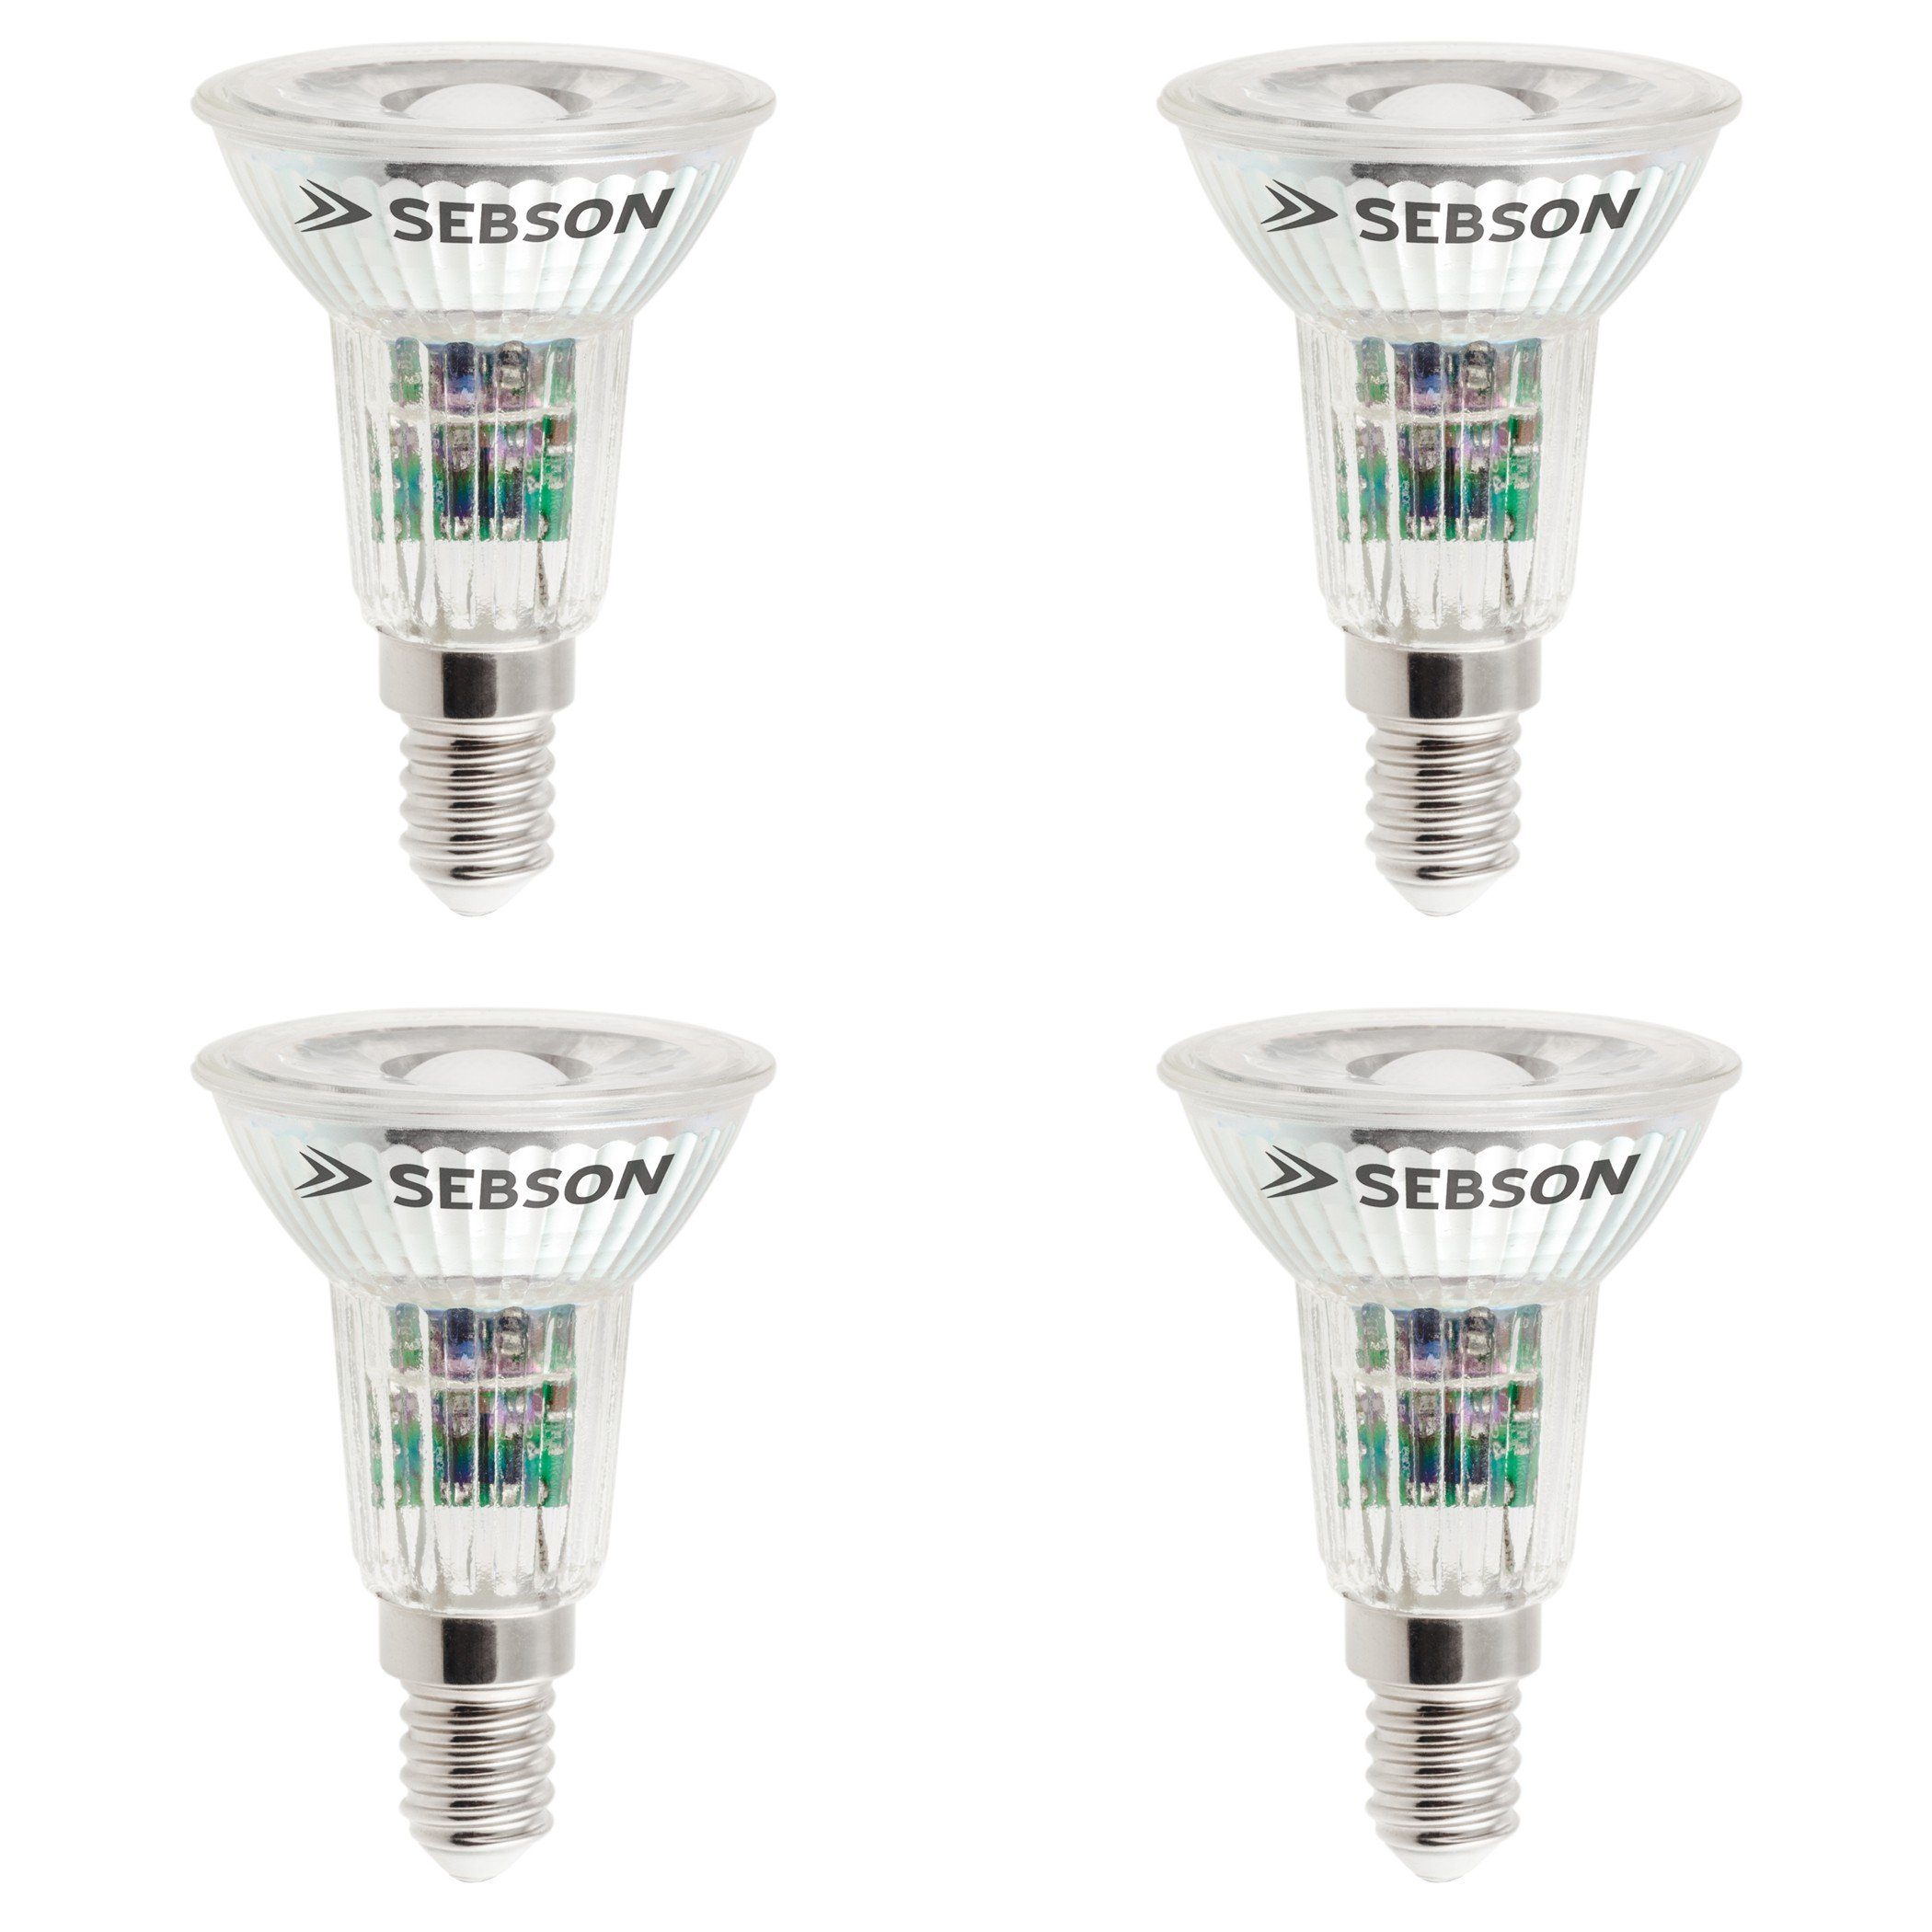 SEBSON LED-Leuchtmittel LED Lampe E14 5W warmweiß 420lm Spot 46° 230V - 4er Pack